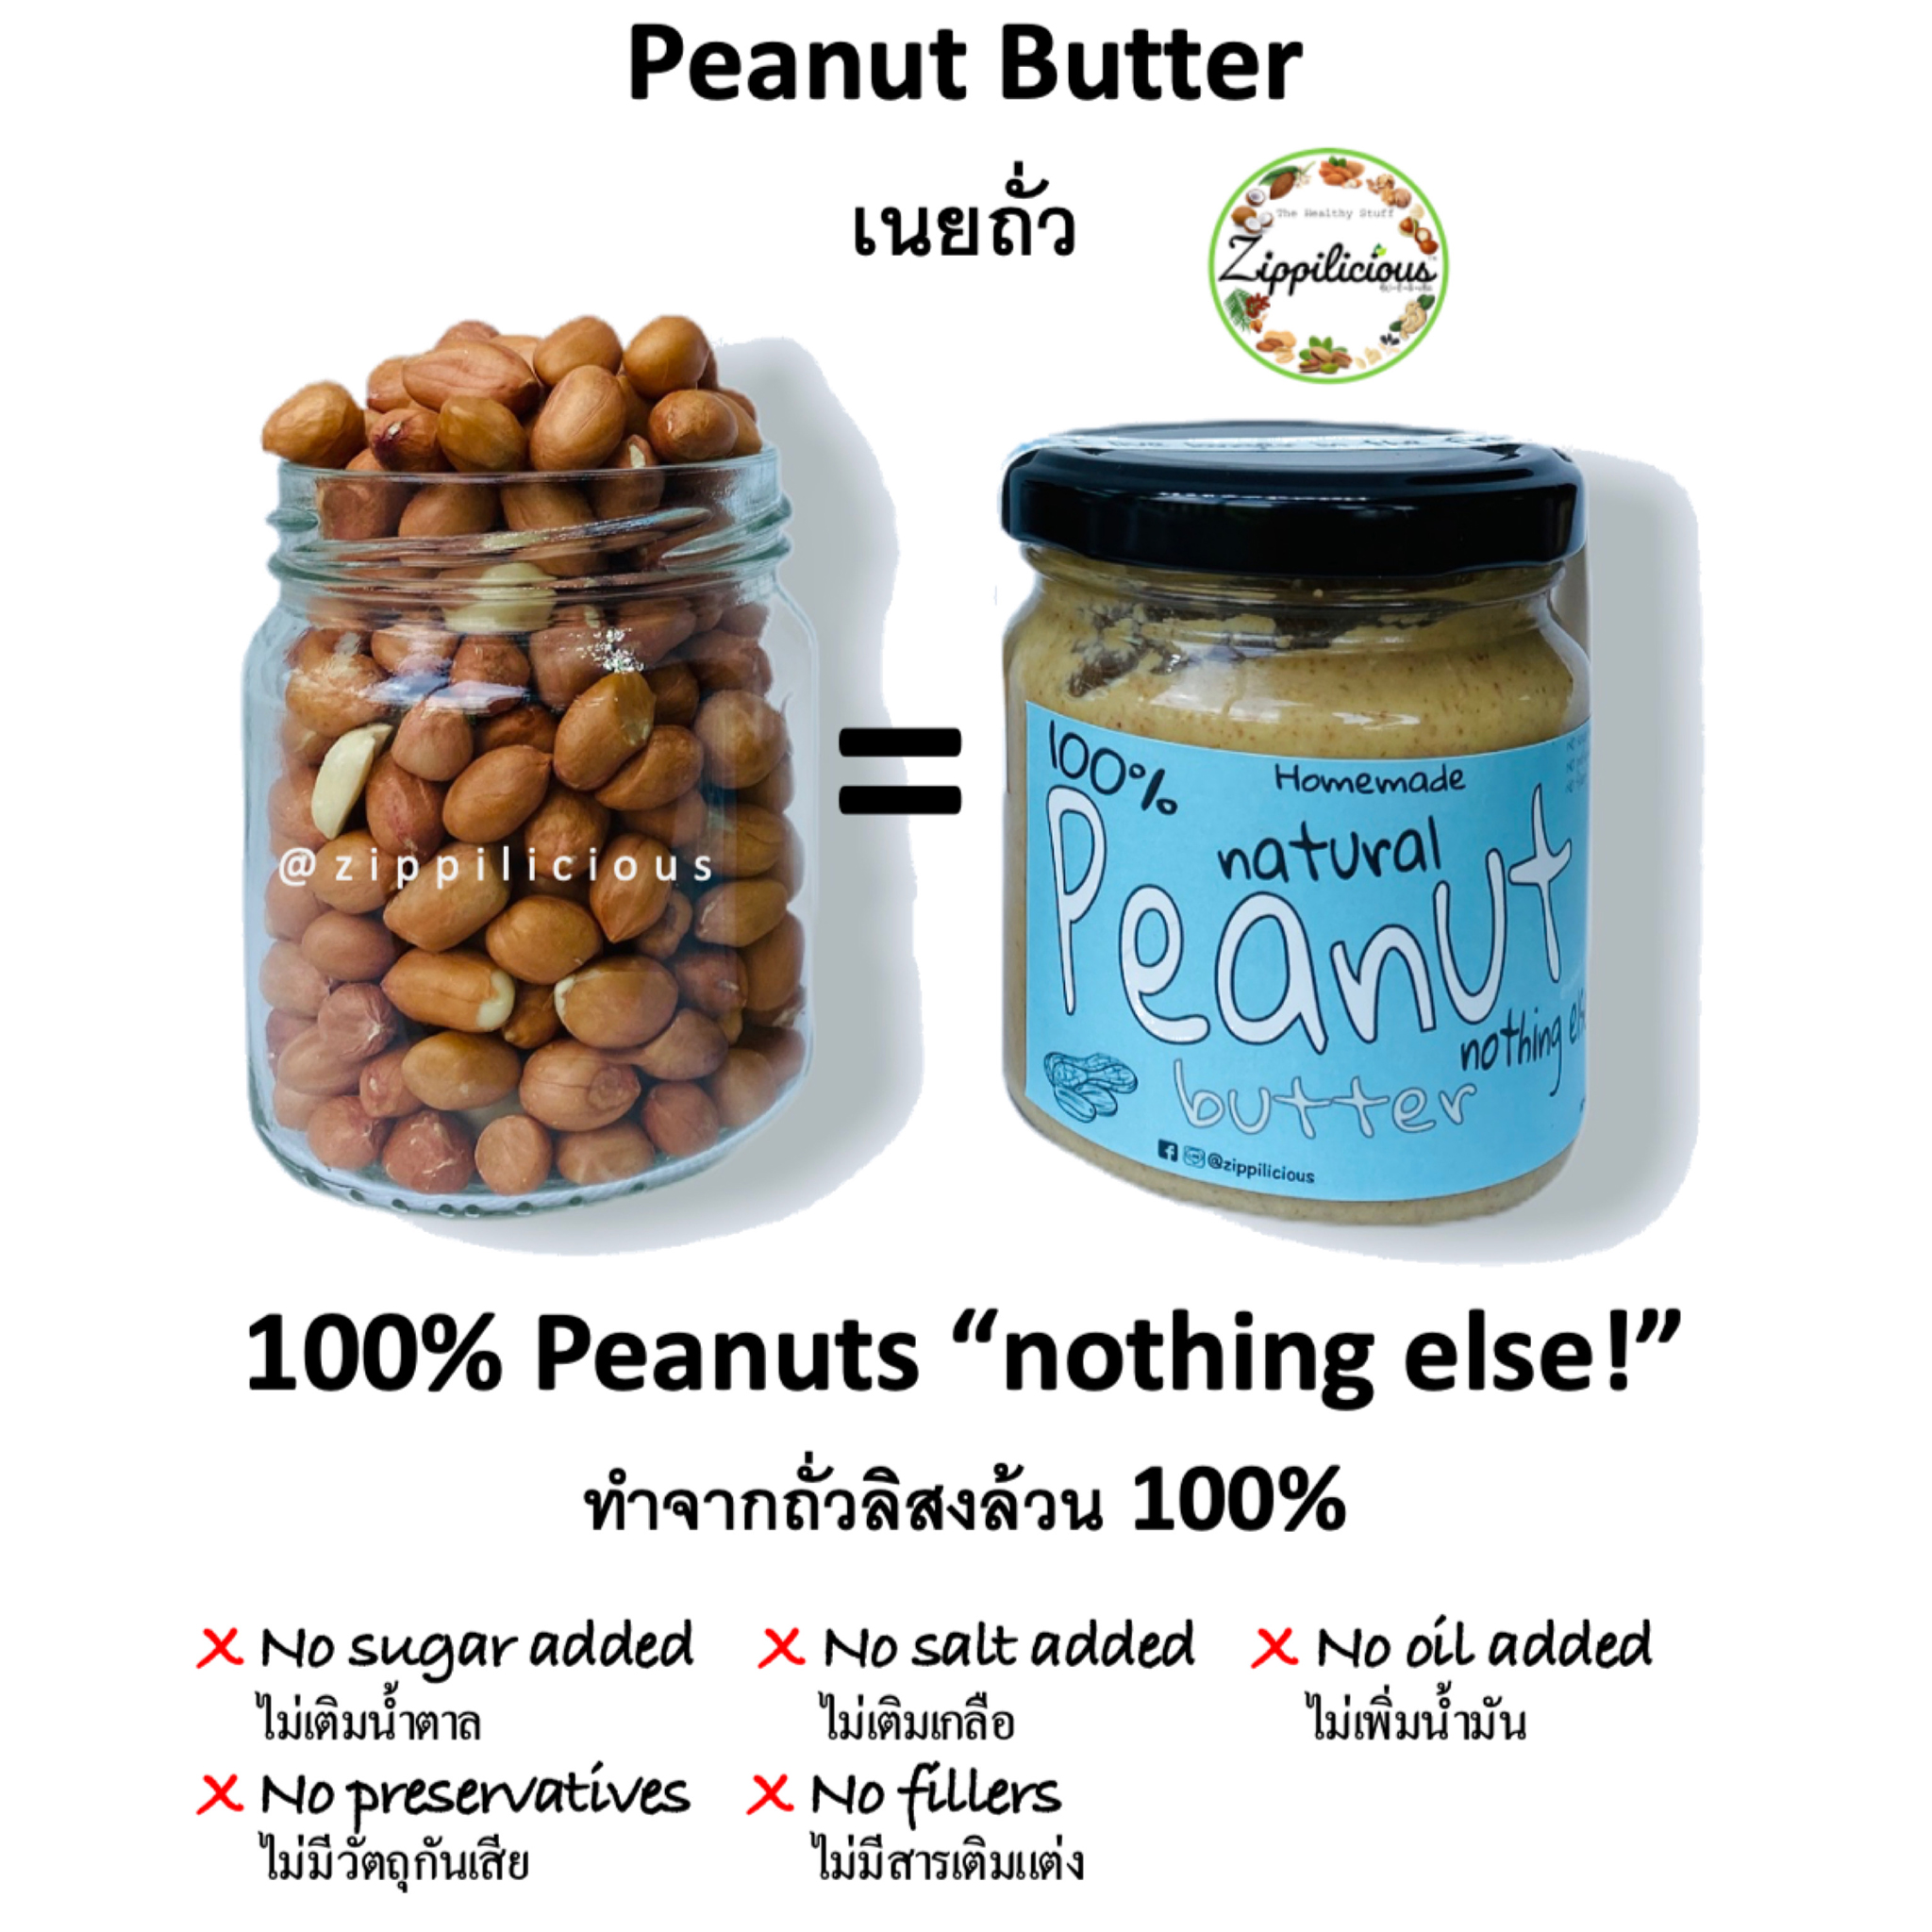 Zippilicious Peanut Butter 200g (NO Sugar NO Salt NO Oil added) All Natural Healthy Spread เนยถั่ว รสธรรมชาติ (ไม่เติมน้ำตาล ไม่เพิ่มเกลือ ไม่มีส่วนผสมของเนย) ทำจากถั่วล้วนๆ 100%